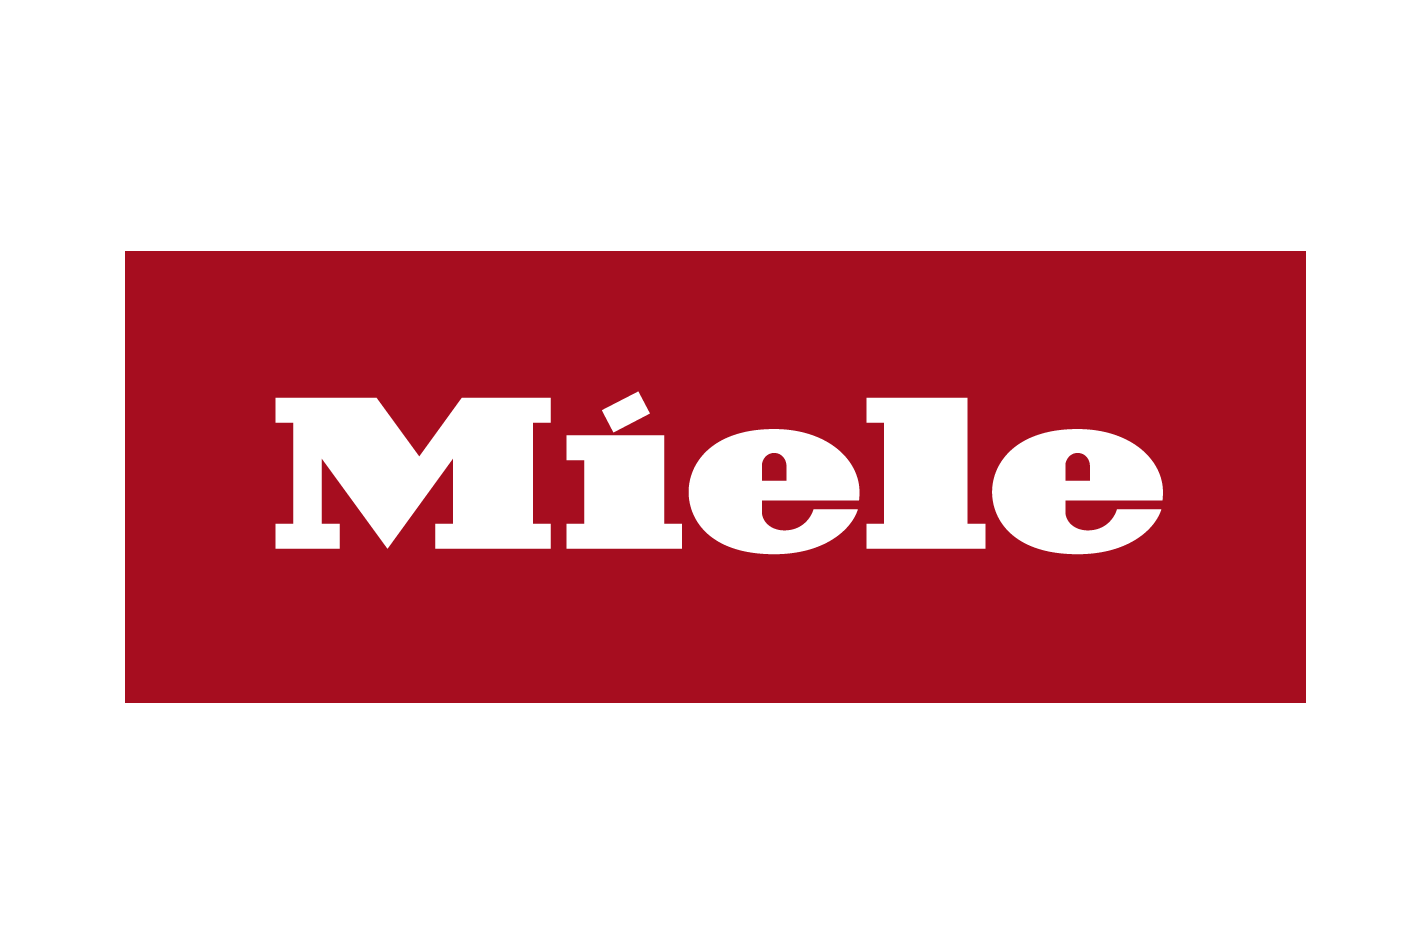 Miele Logo - Headline sponsor: Miele